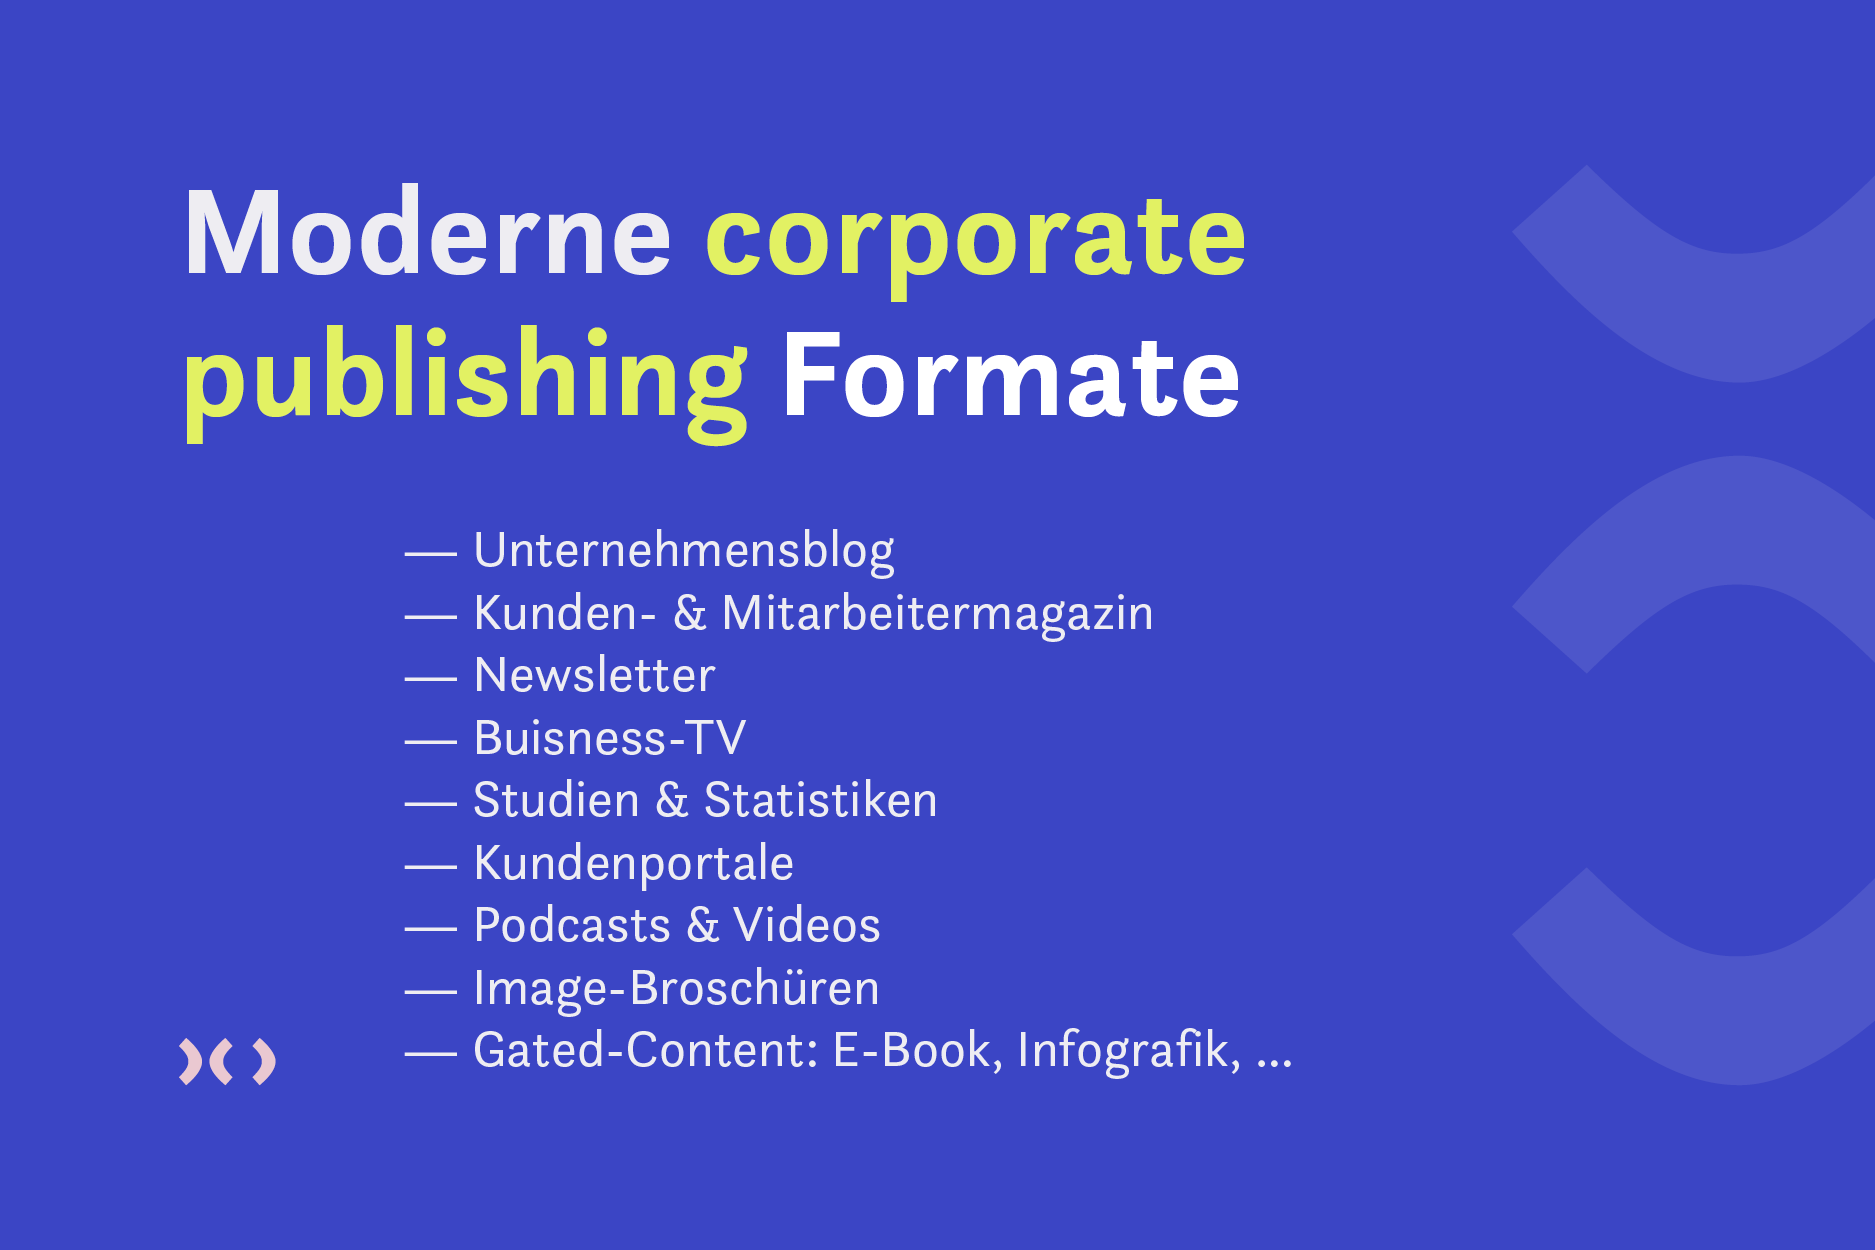 Bildhinweis: Moderne corporate publishing Formate wie Unternehmensblog, Newsletter und Kundenportale